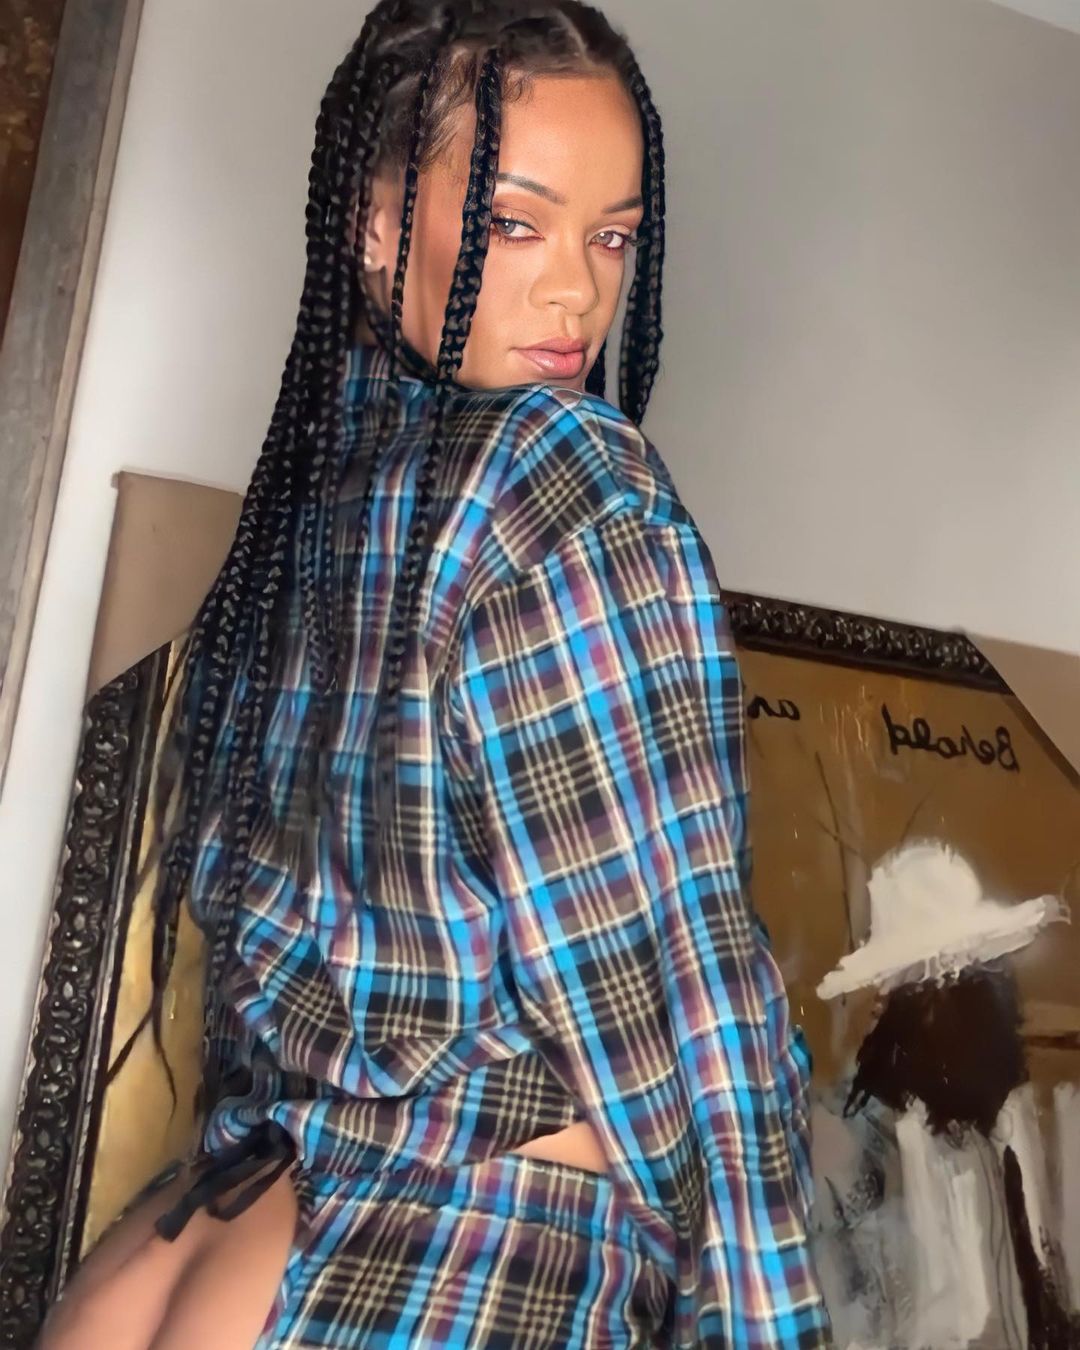 Rihanna reveals her giant ass